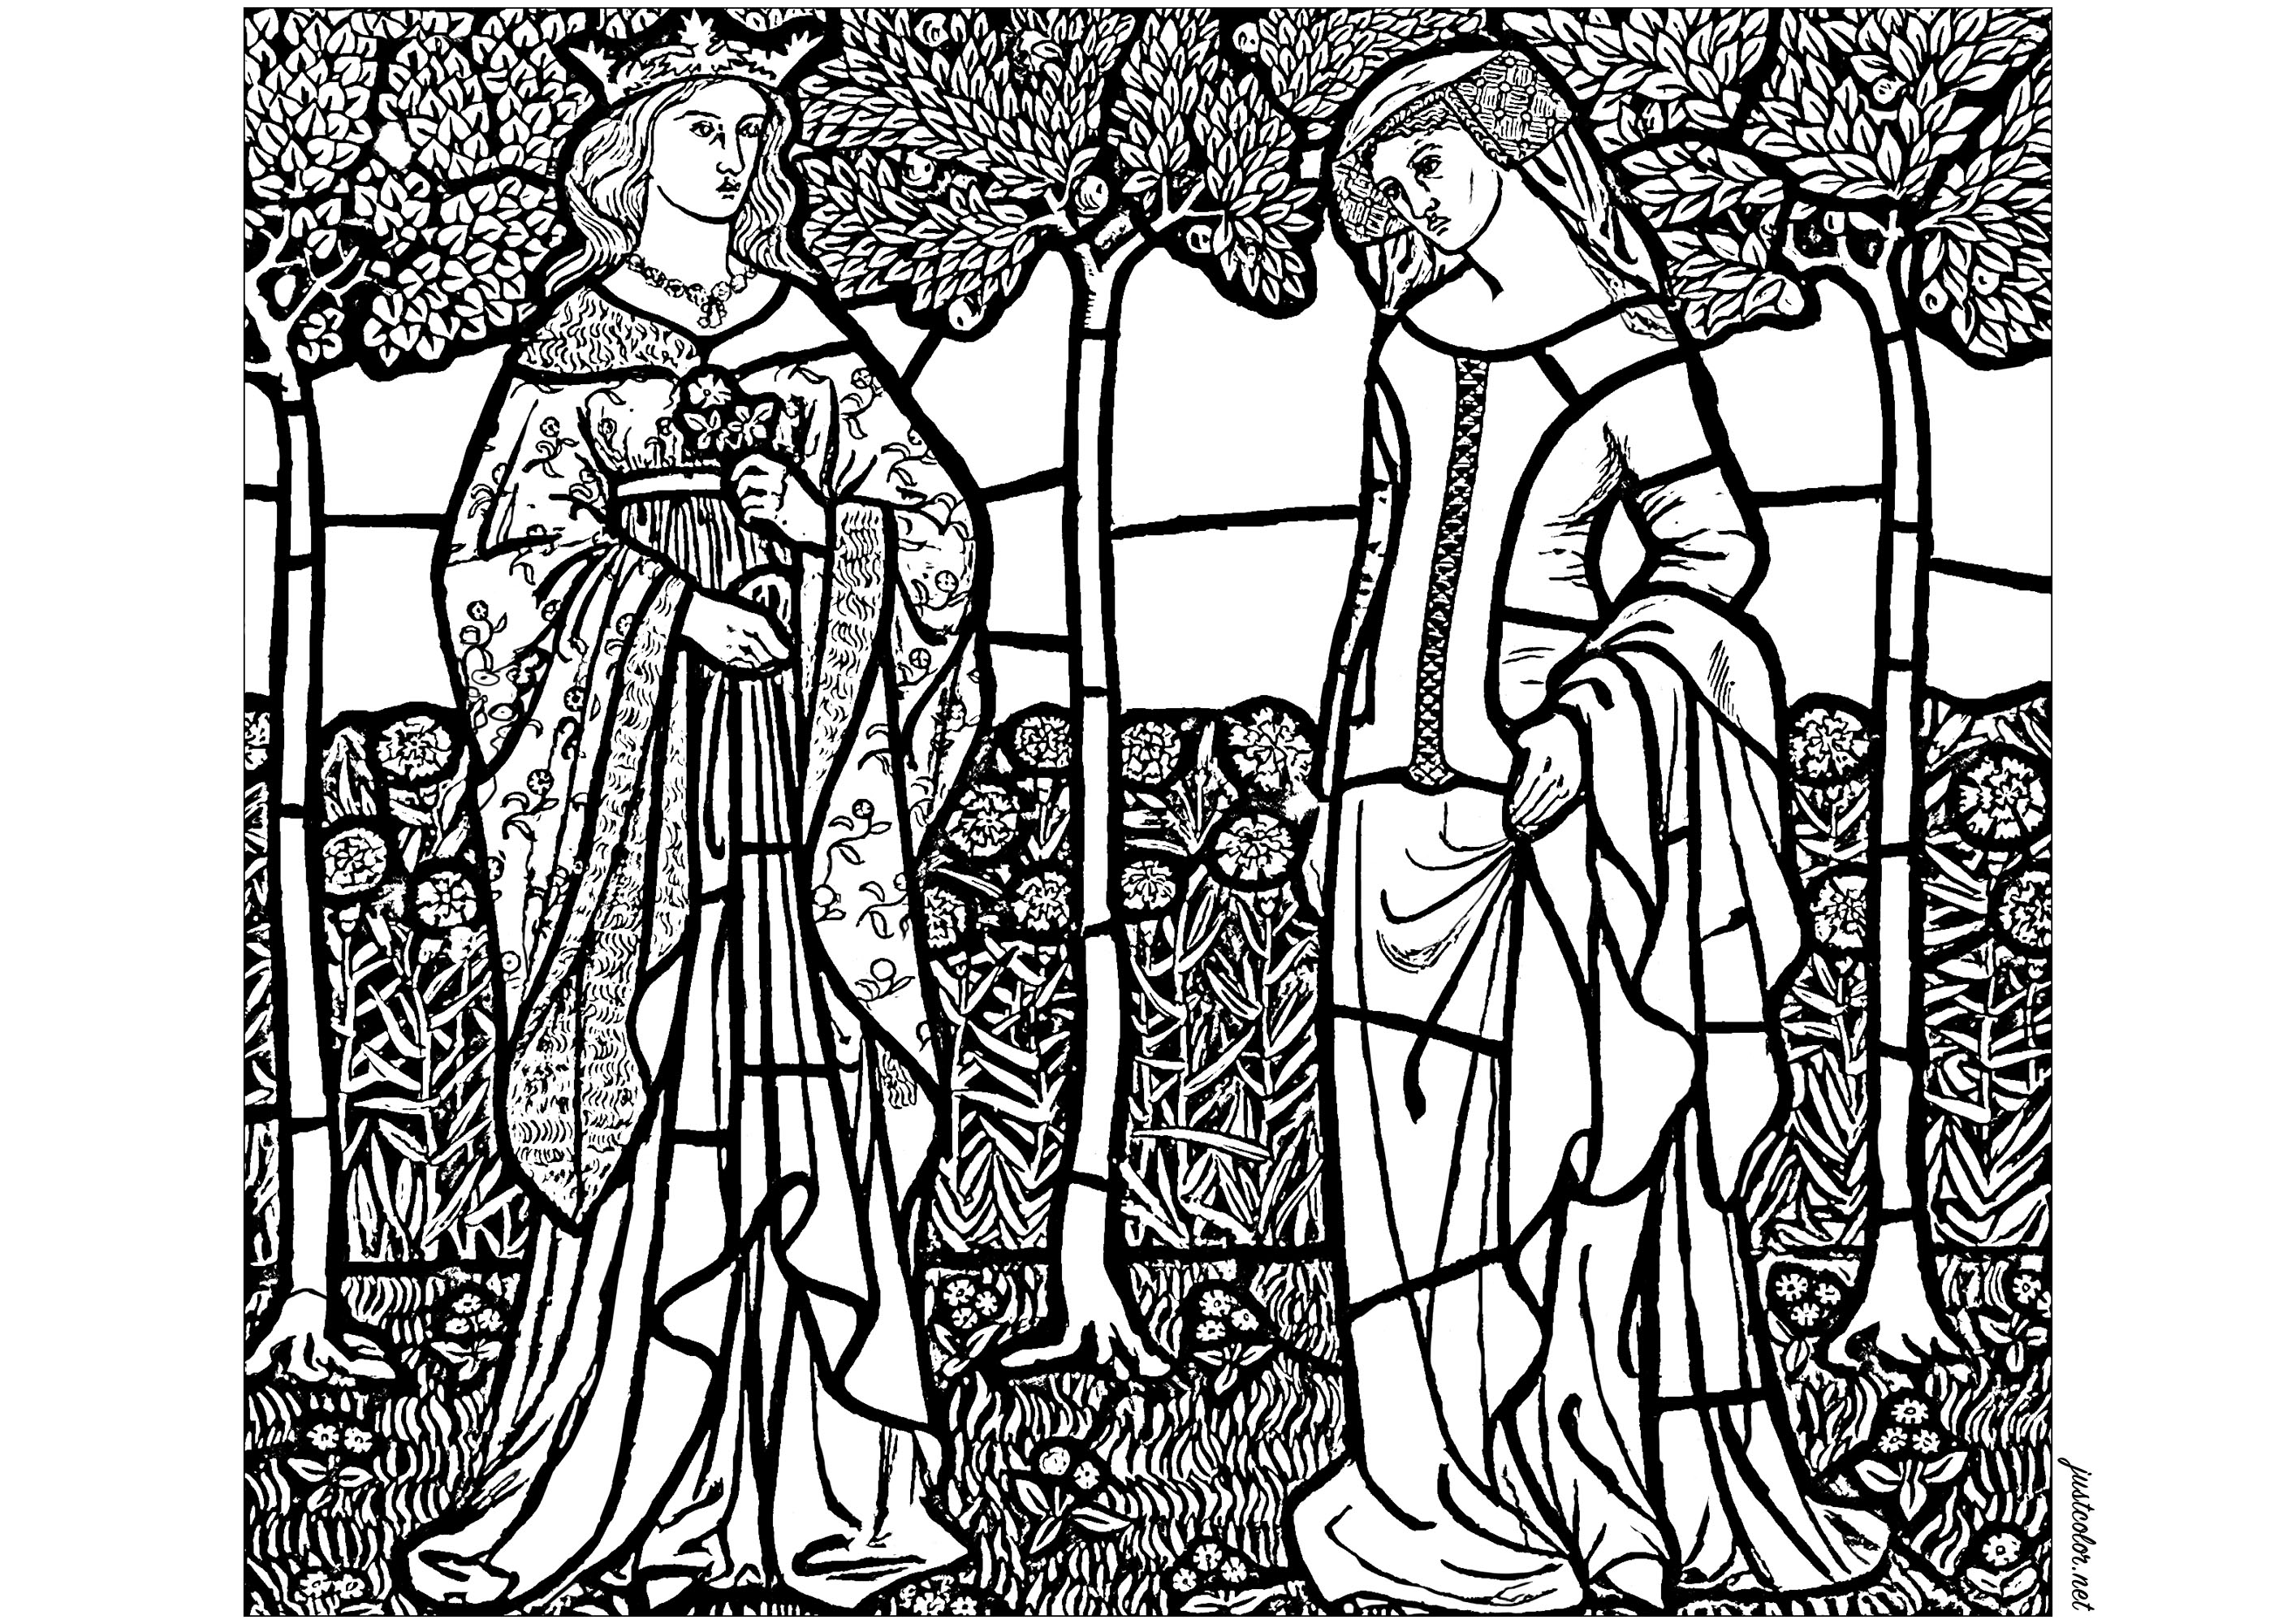 William Morris - Guenièvre et Iseult. Coloriage créé à partir d'un dessin préparatoire de William Morris pour un vitrail représentant Guenièvre et Iseult (1858)